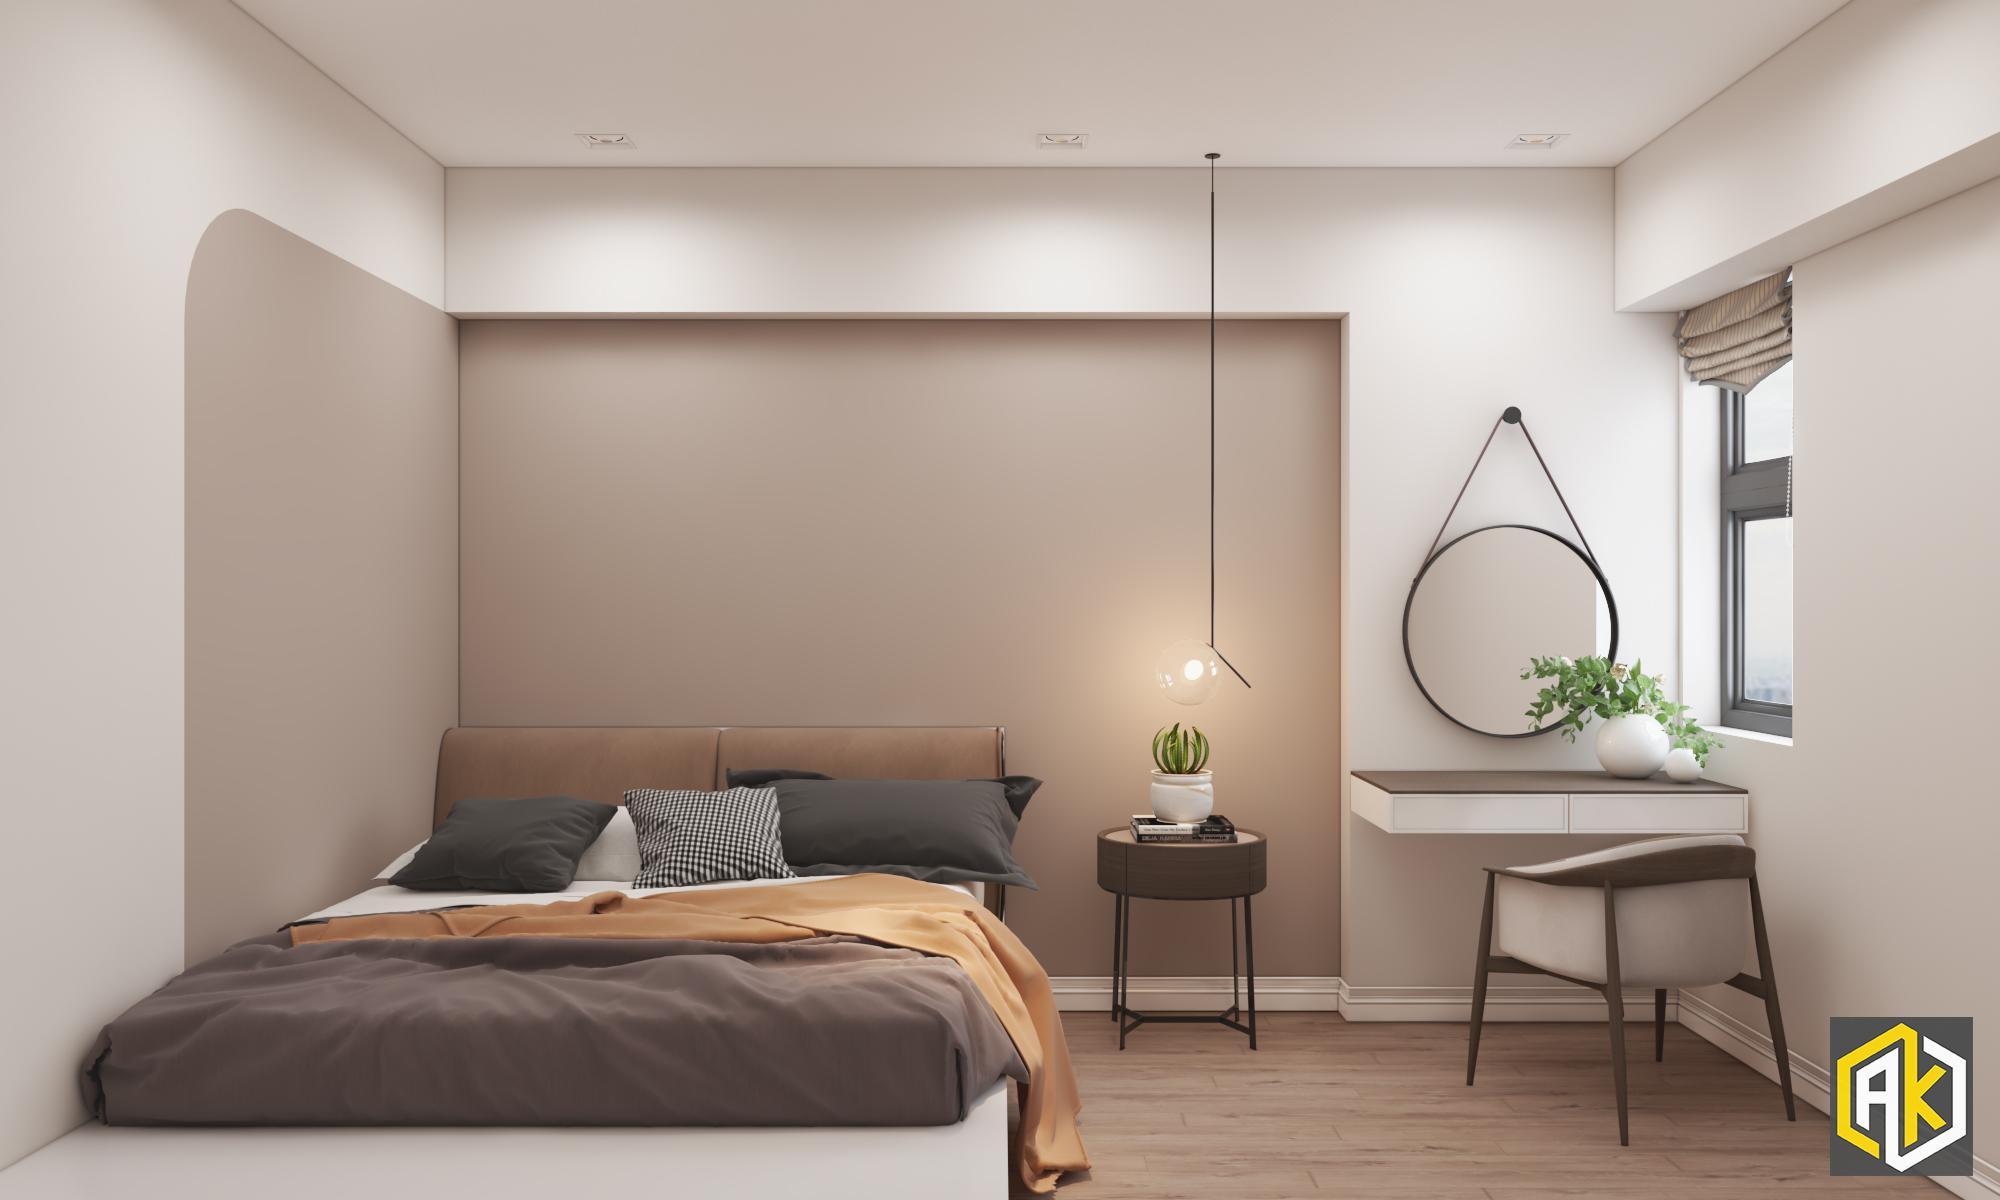 hình mẫu thiết kế nội thất chung cư 2 phòng ngủ với gam màu ấm phối với phong cách đơn giản